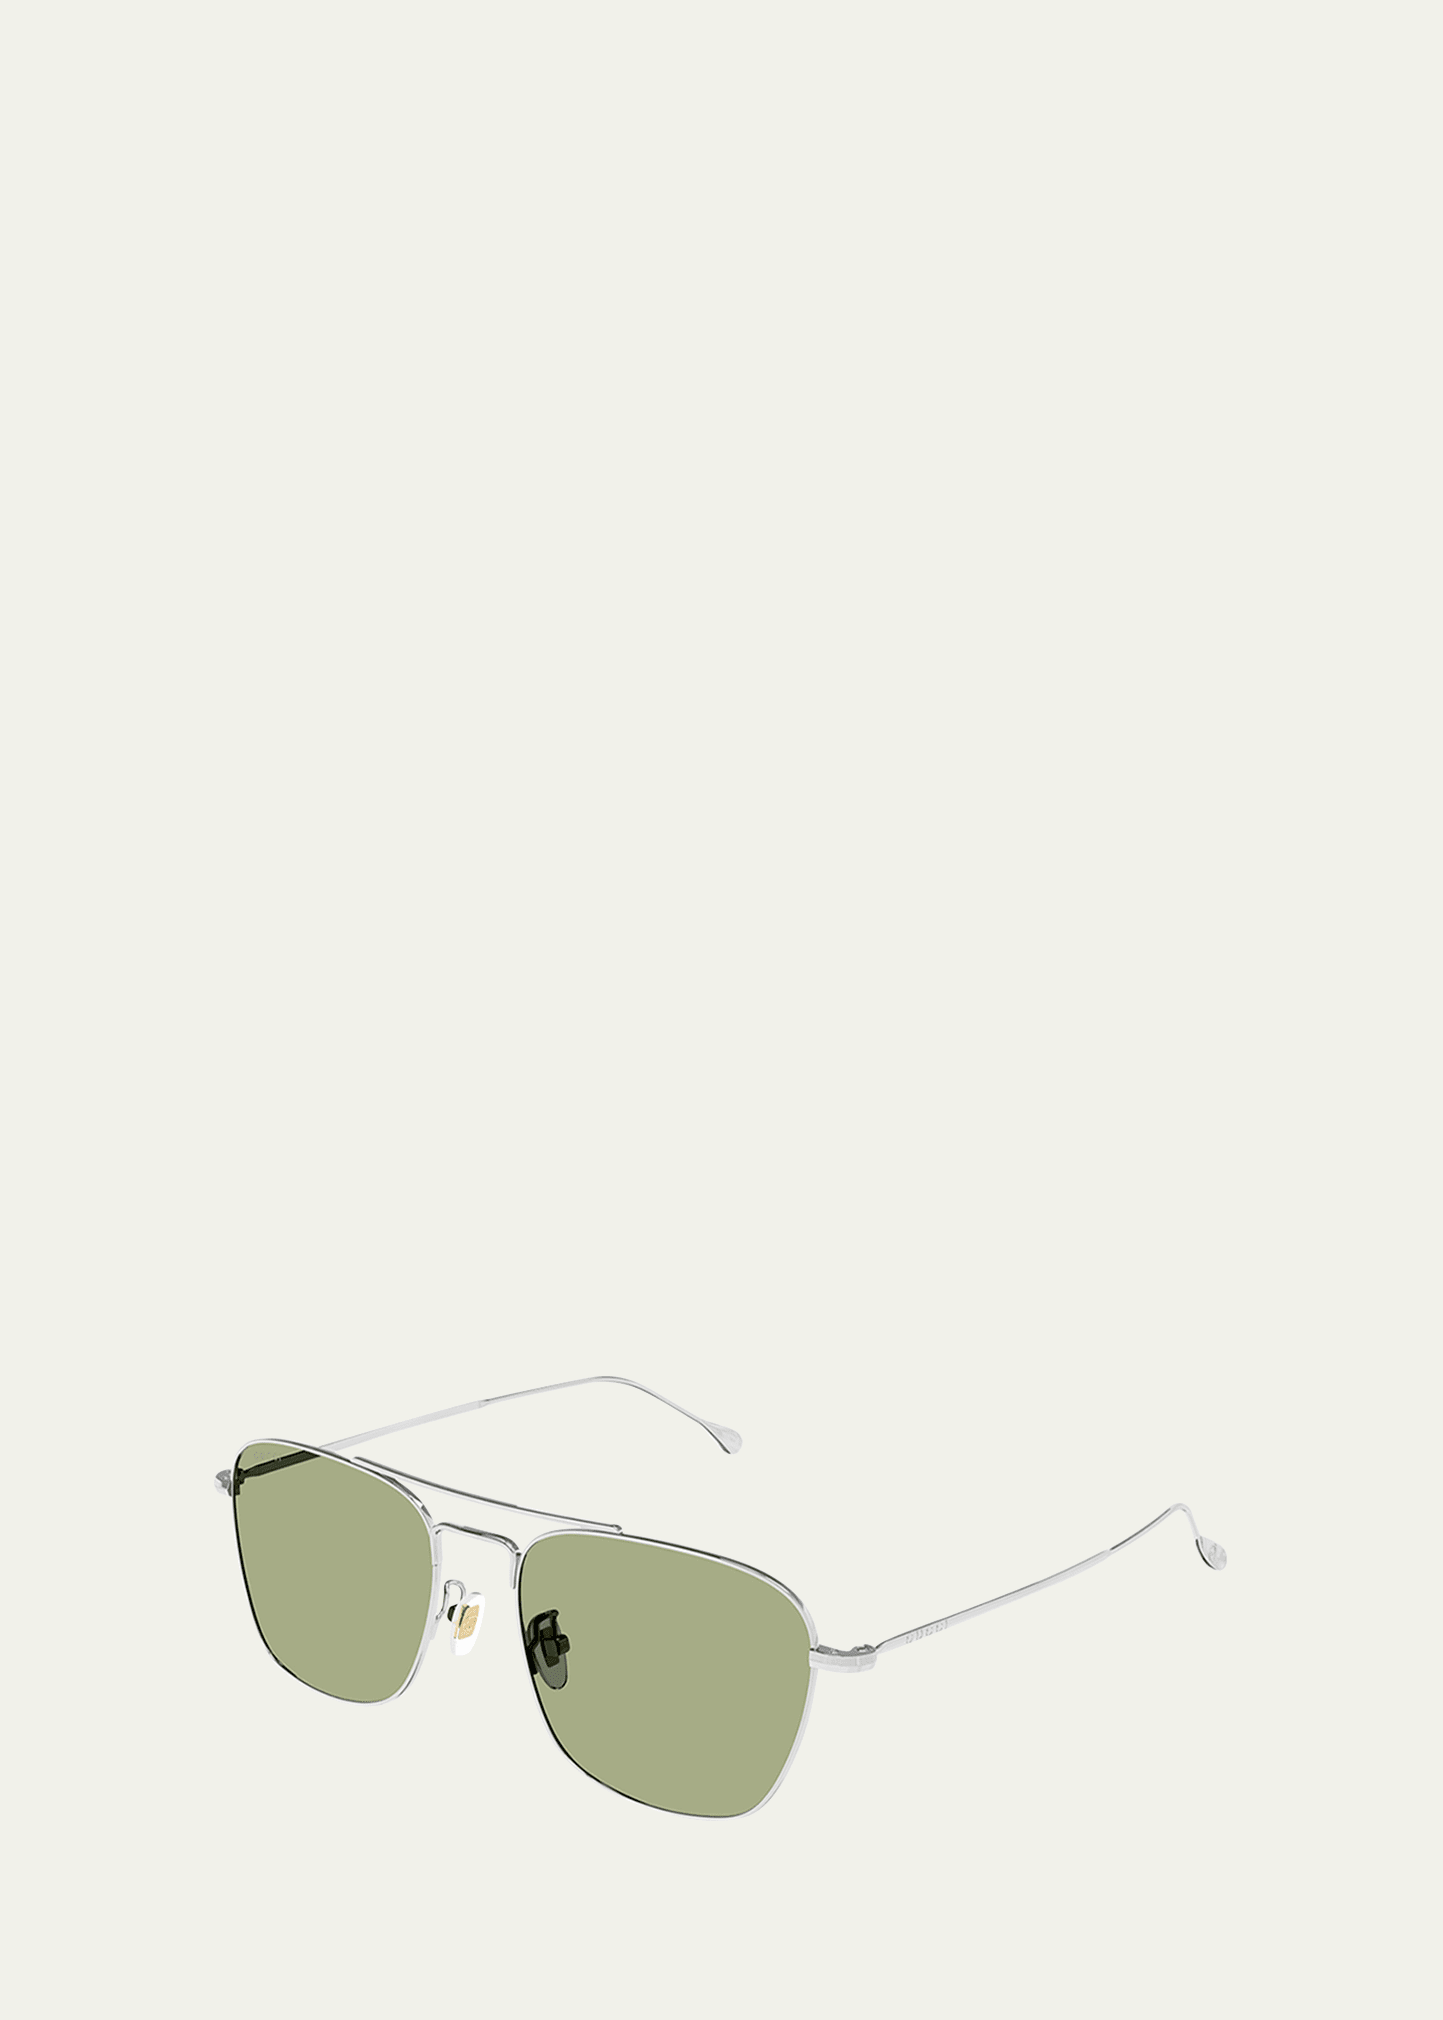 Gucci Men's Double-bridge Metal Rectangle Sunglasses In Shiny Silver